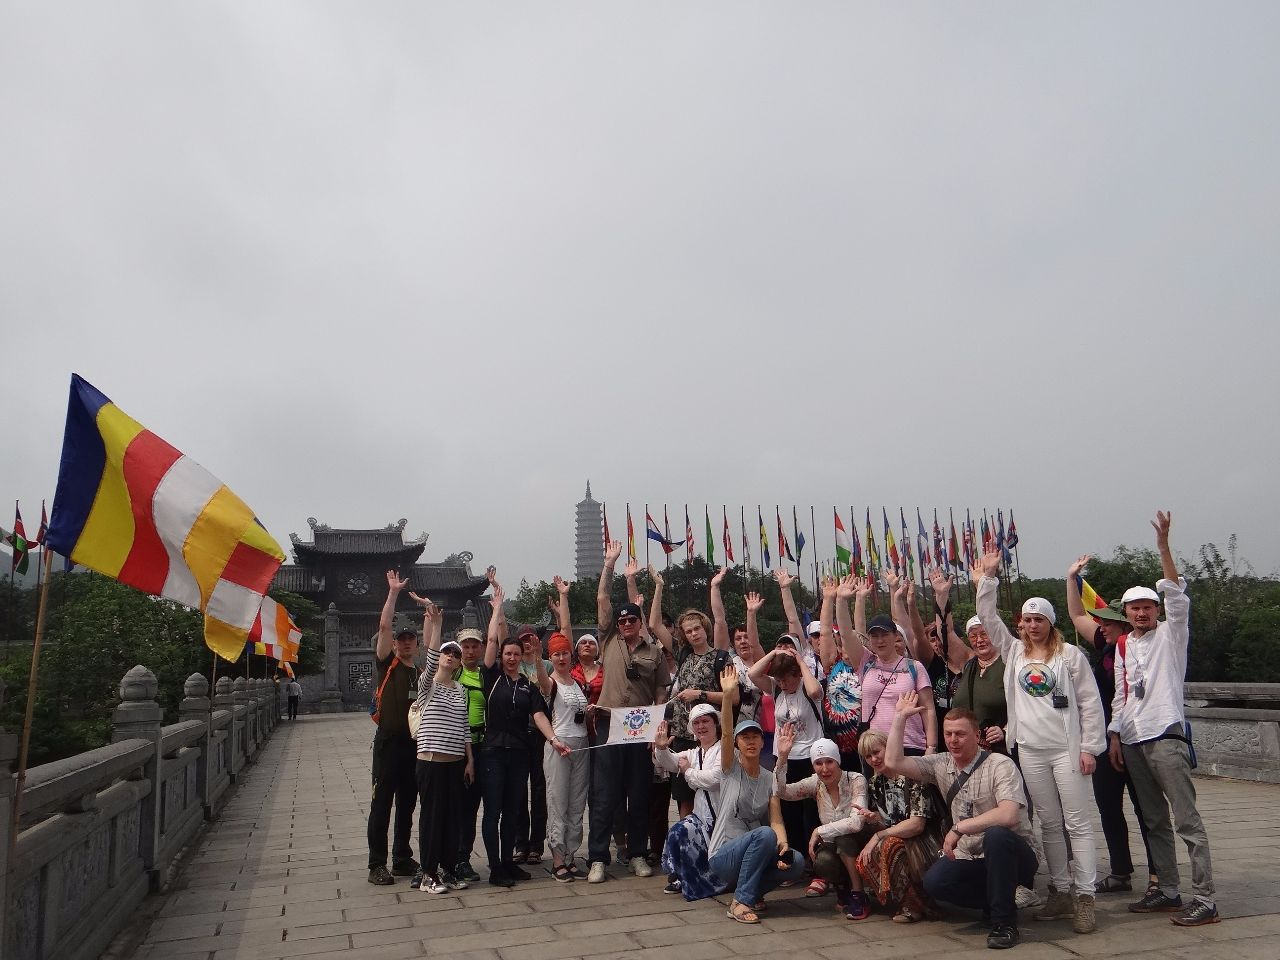 Мост с буддийскими флагами, ведущий к площади, на которой установлено множество флагов разных стран мира. - Фотоотчет Вьетнам 2019. Часть 4.